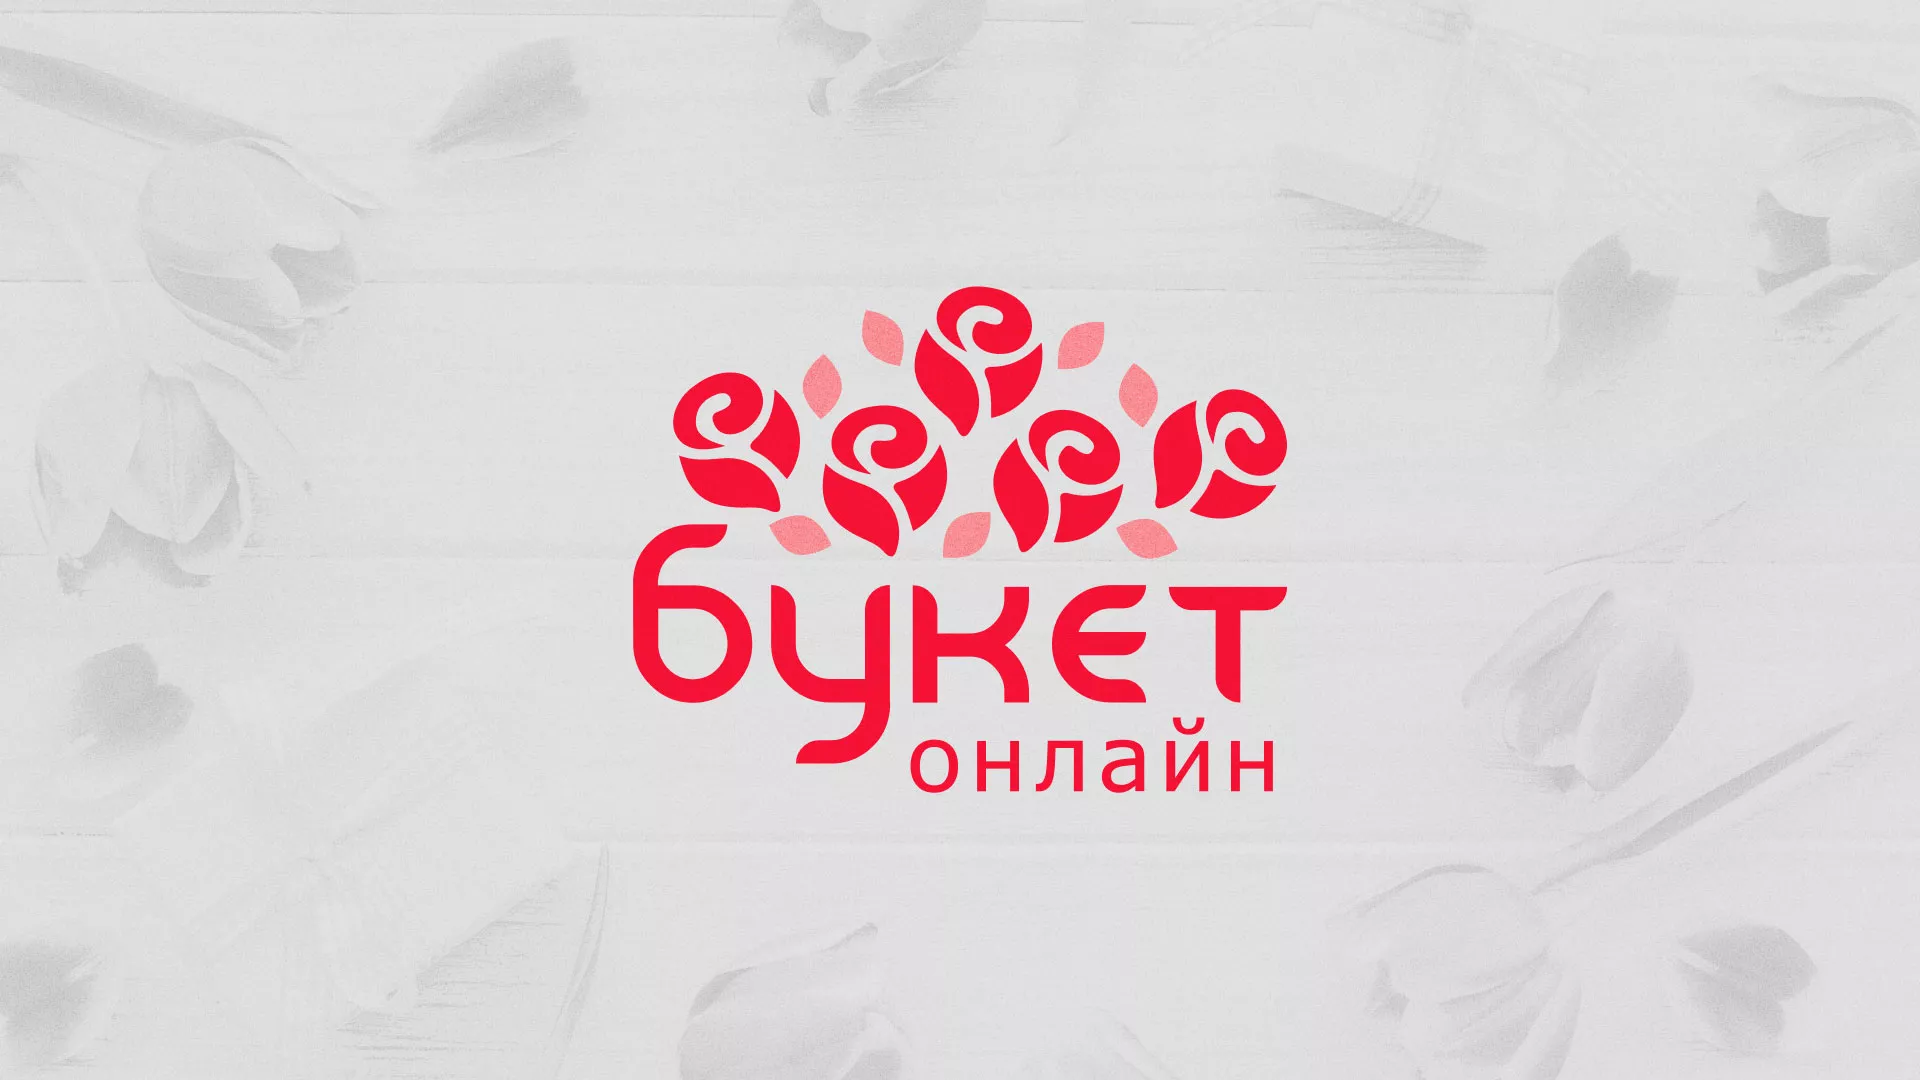 Создание интернет-магазина «Букет-онлайн» по цветам в Порхове